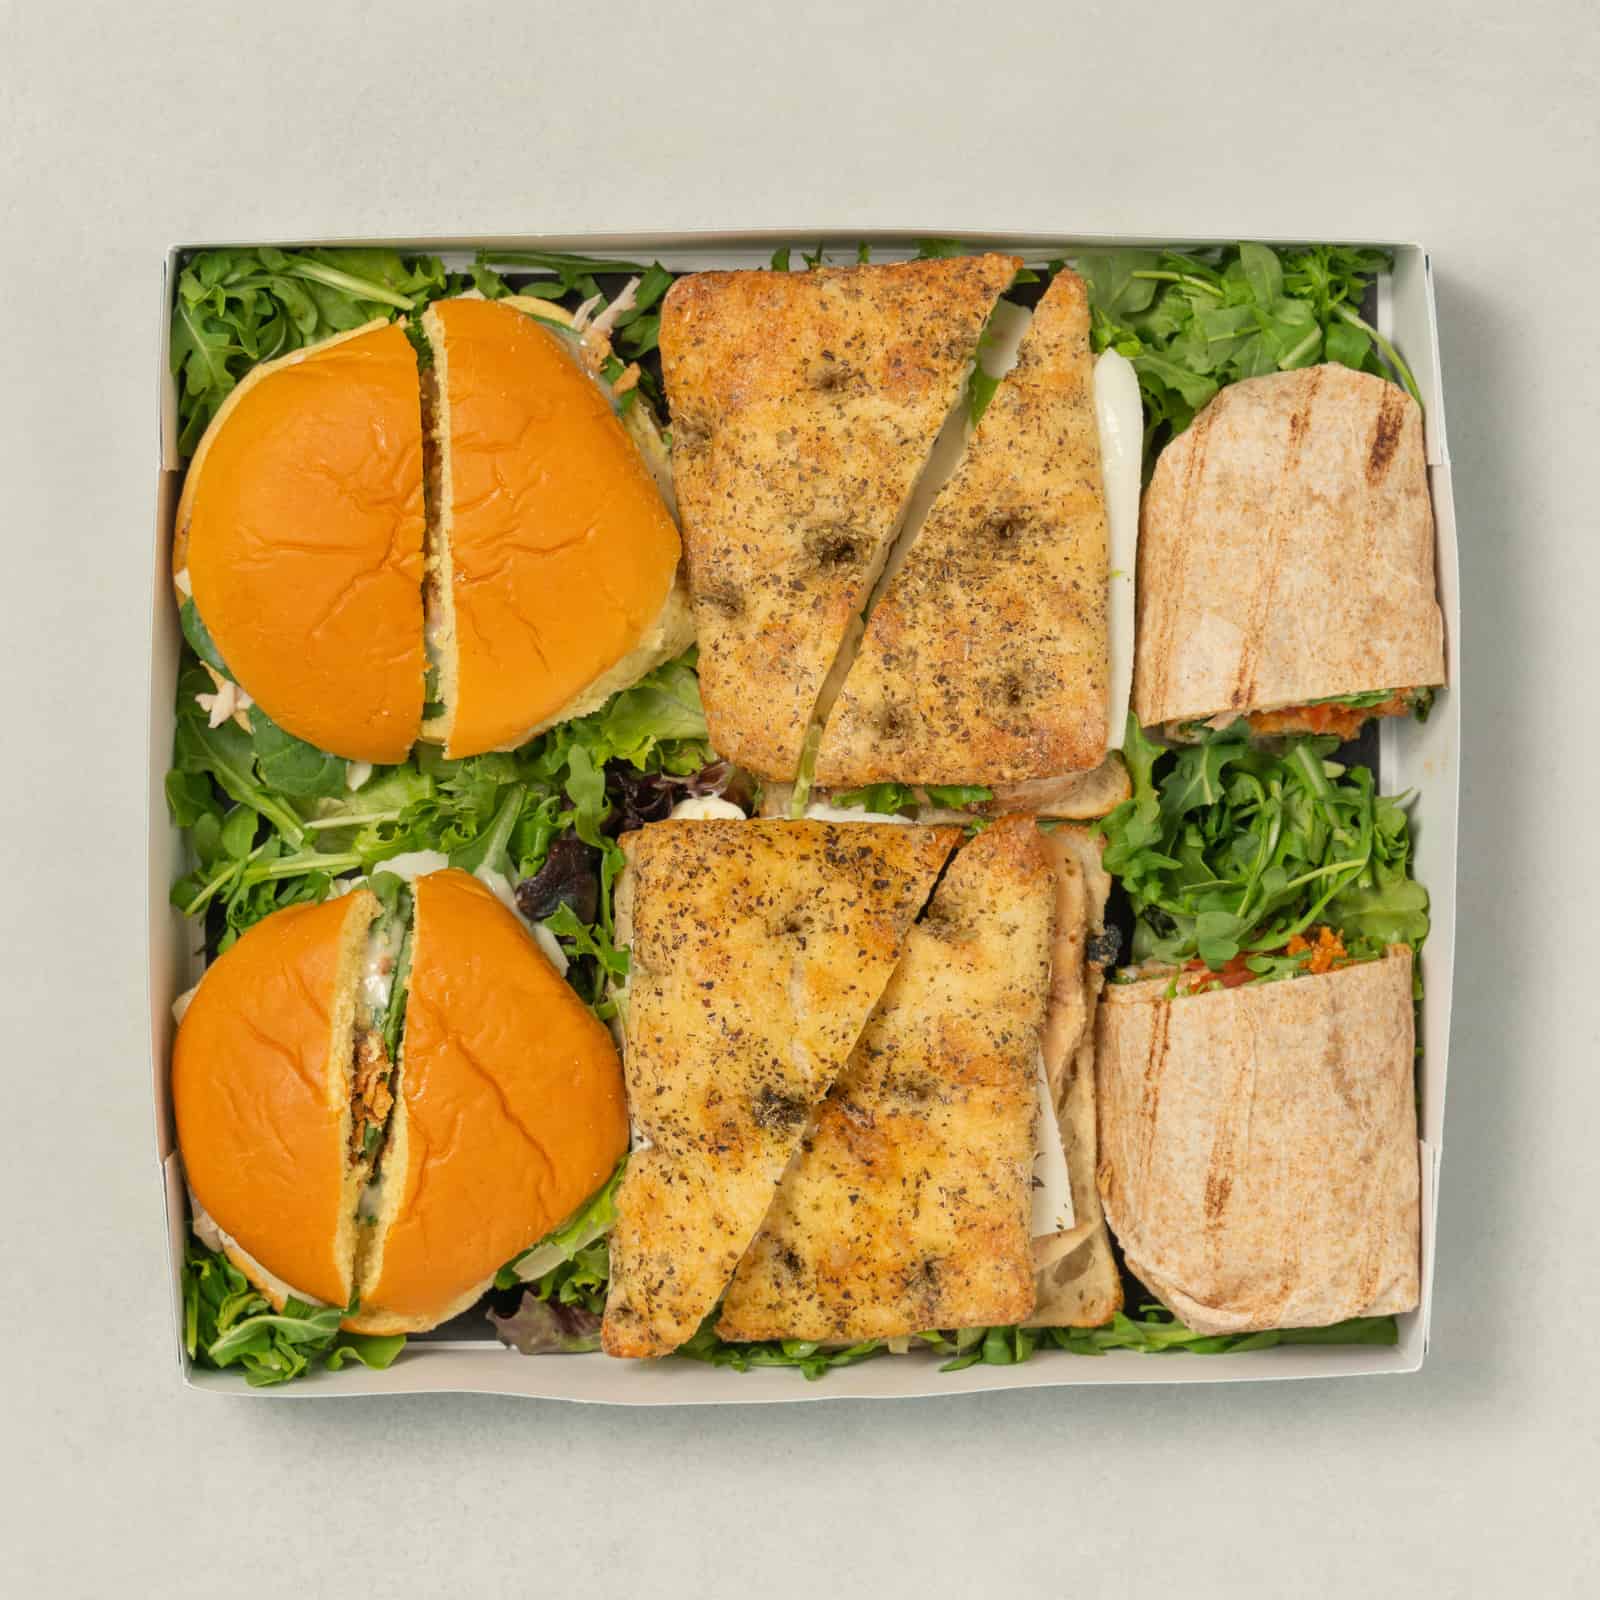 Mixed Sandwich Platter AvecPlaisirs